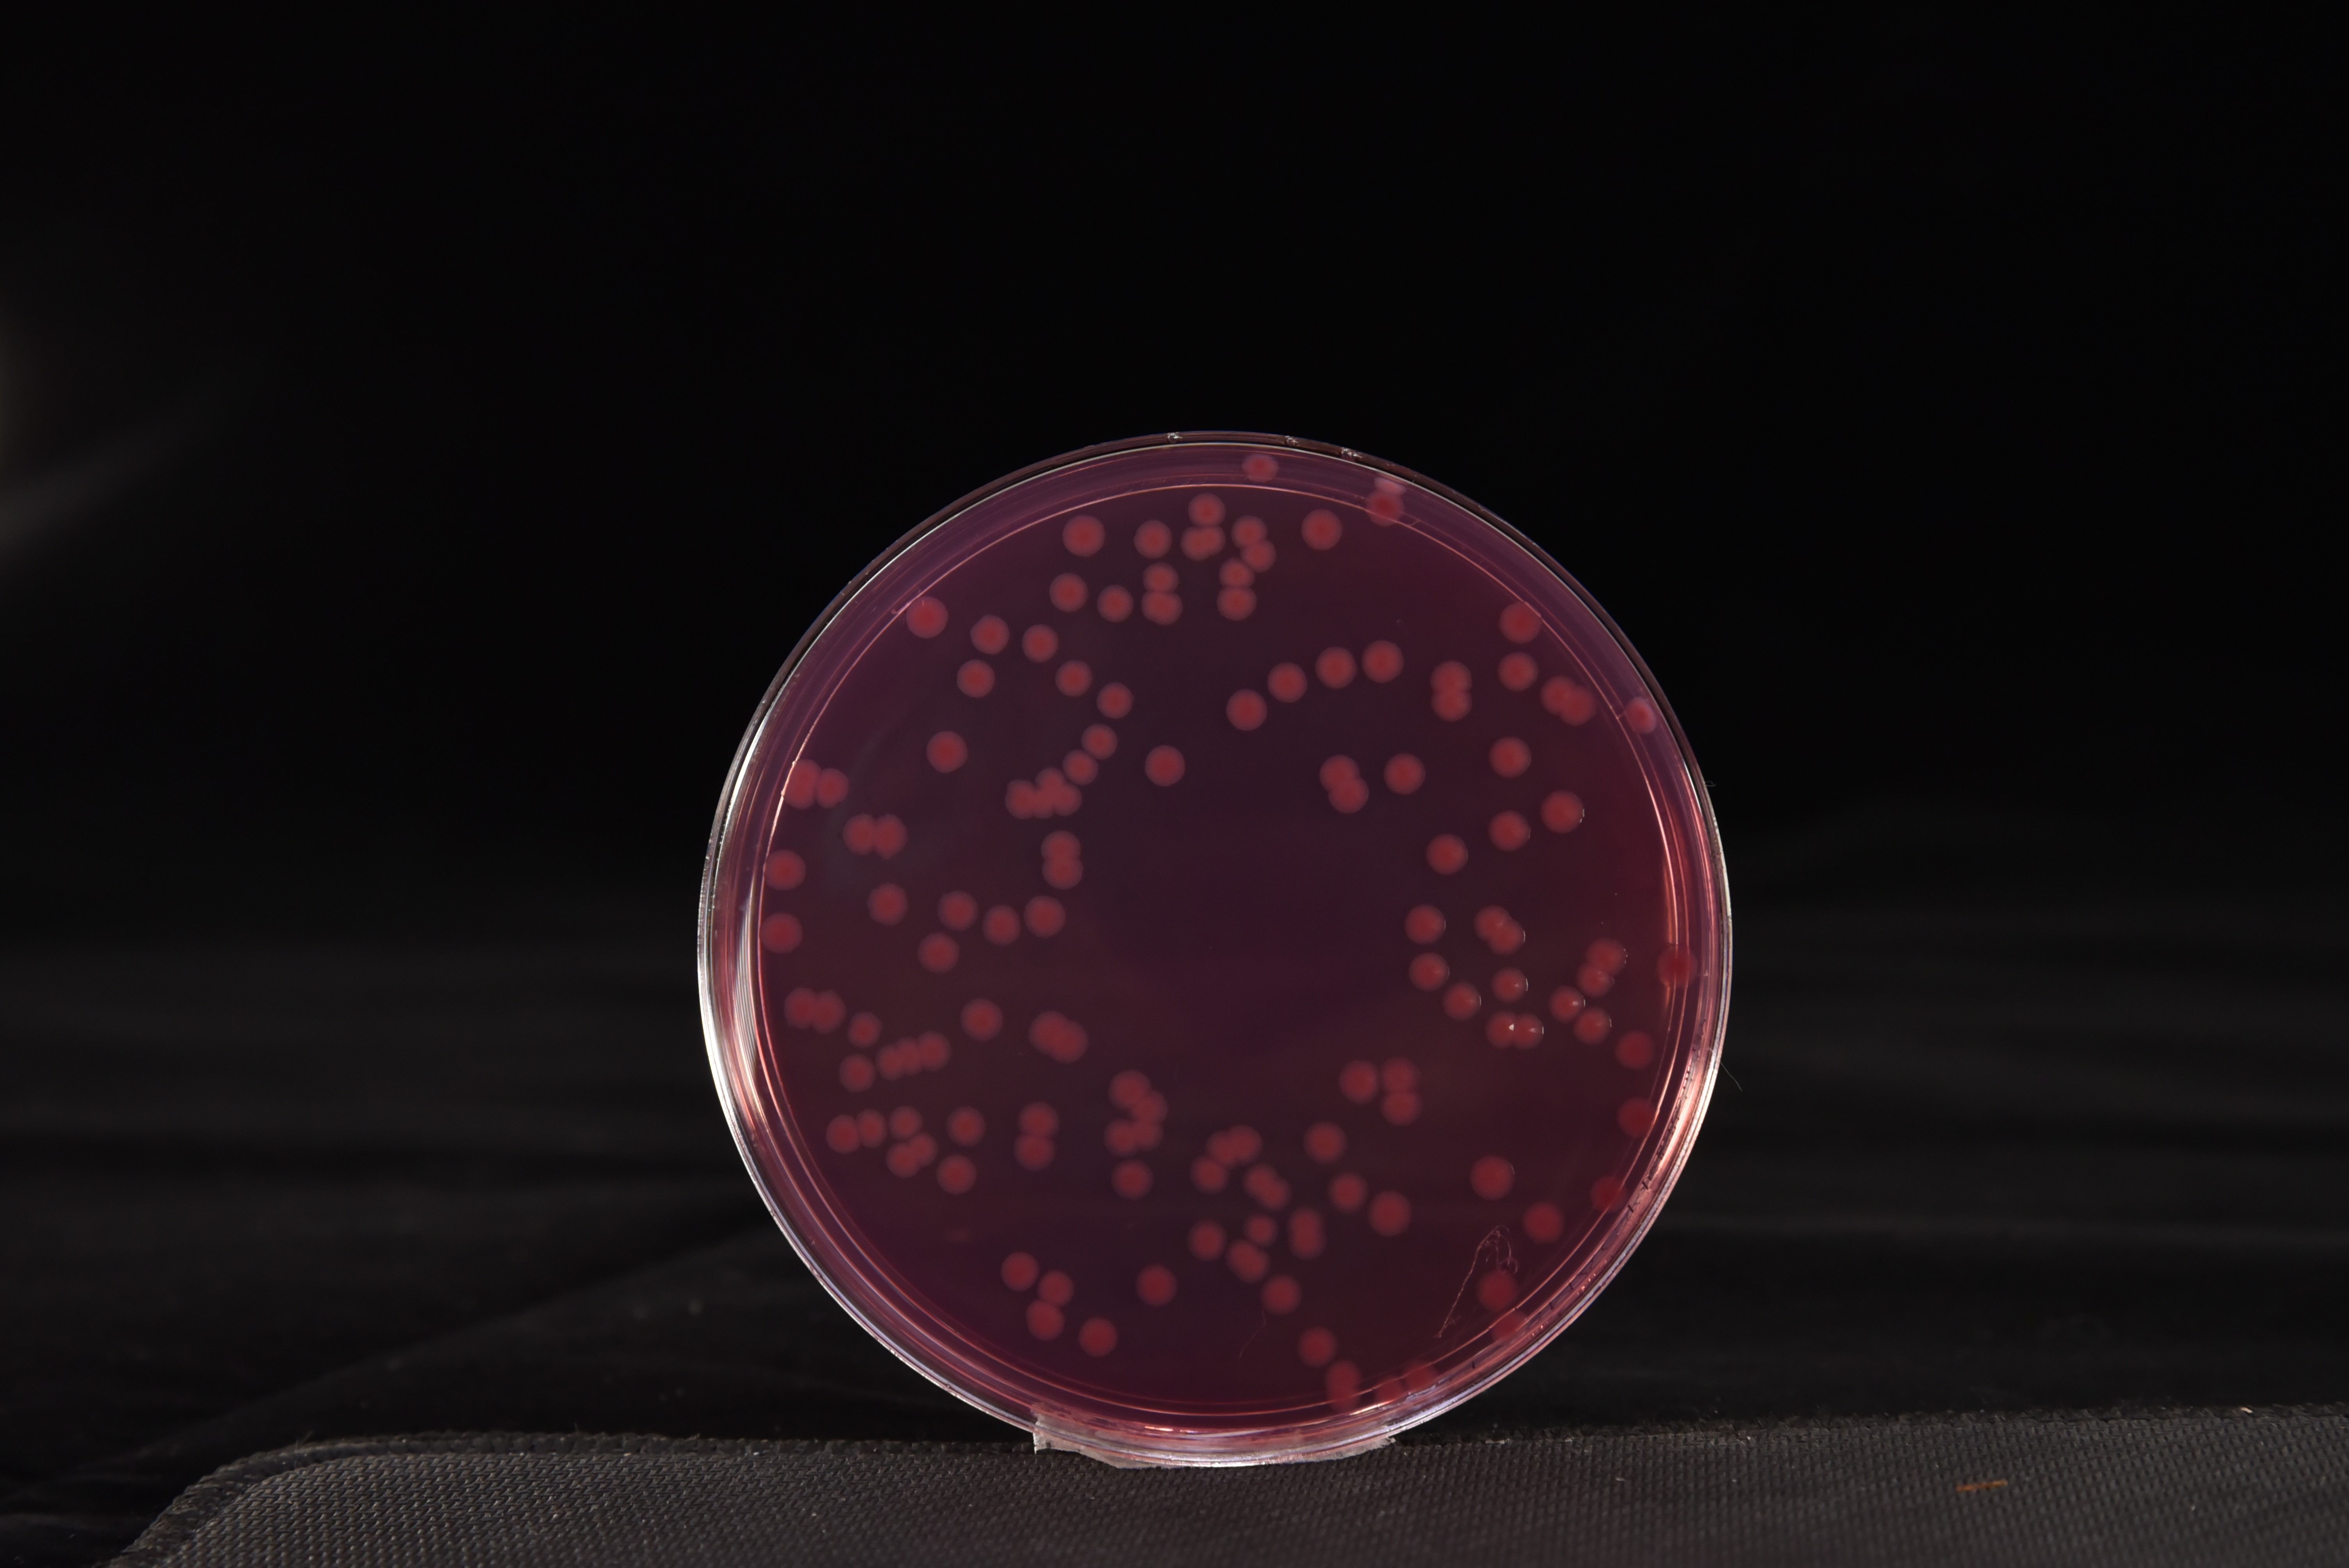 大肠杆菌O157:H7/NM菌落特征